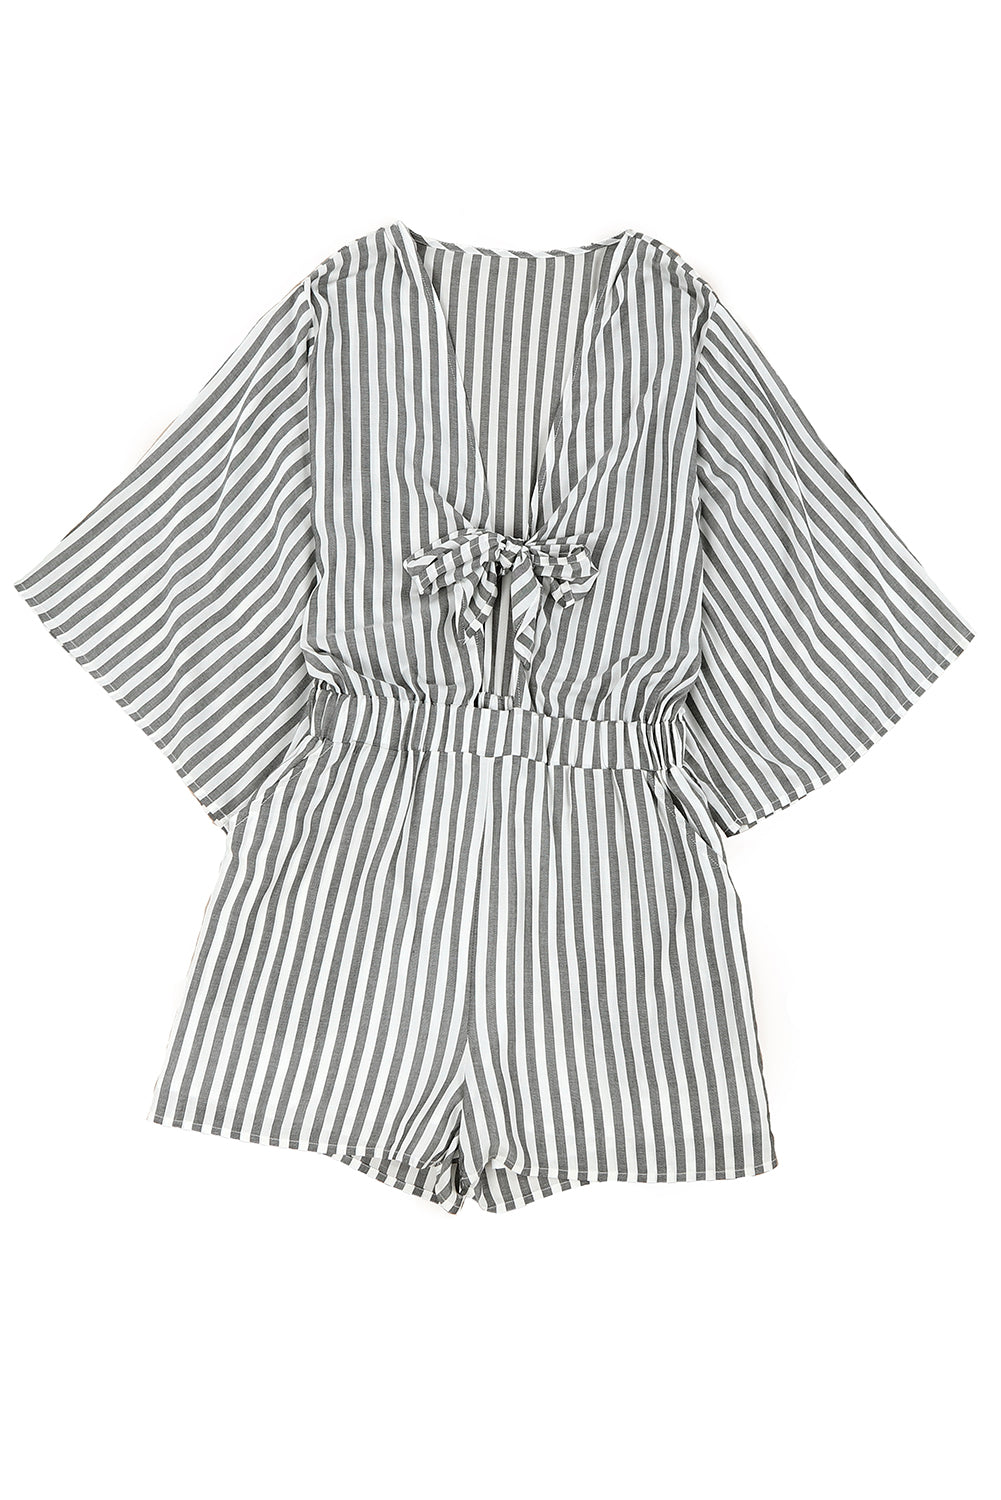 Pagliaccetto a righe anteriori con maniche a kimono larghe 3/4 grigie con tasche